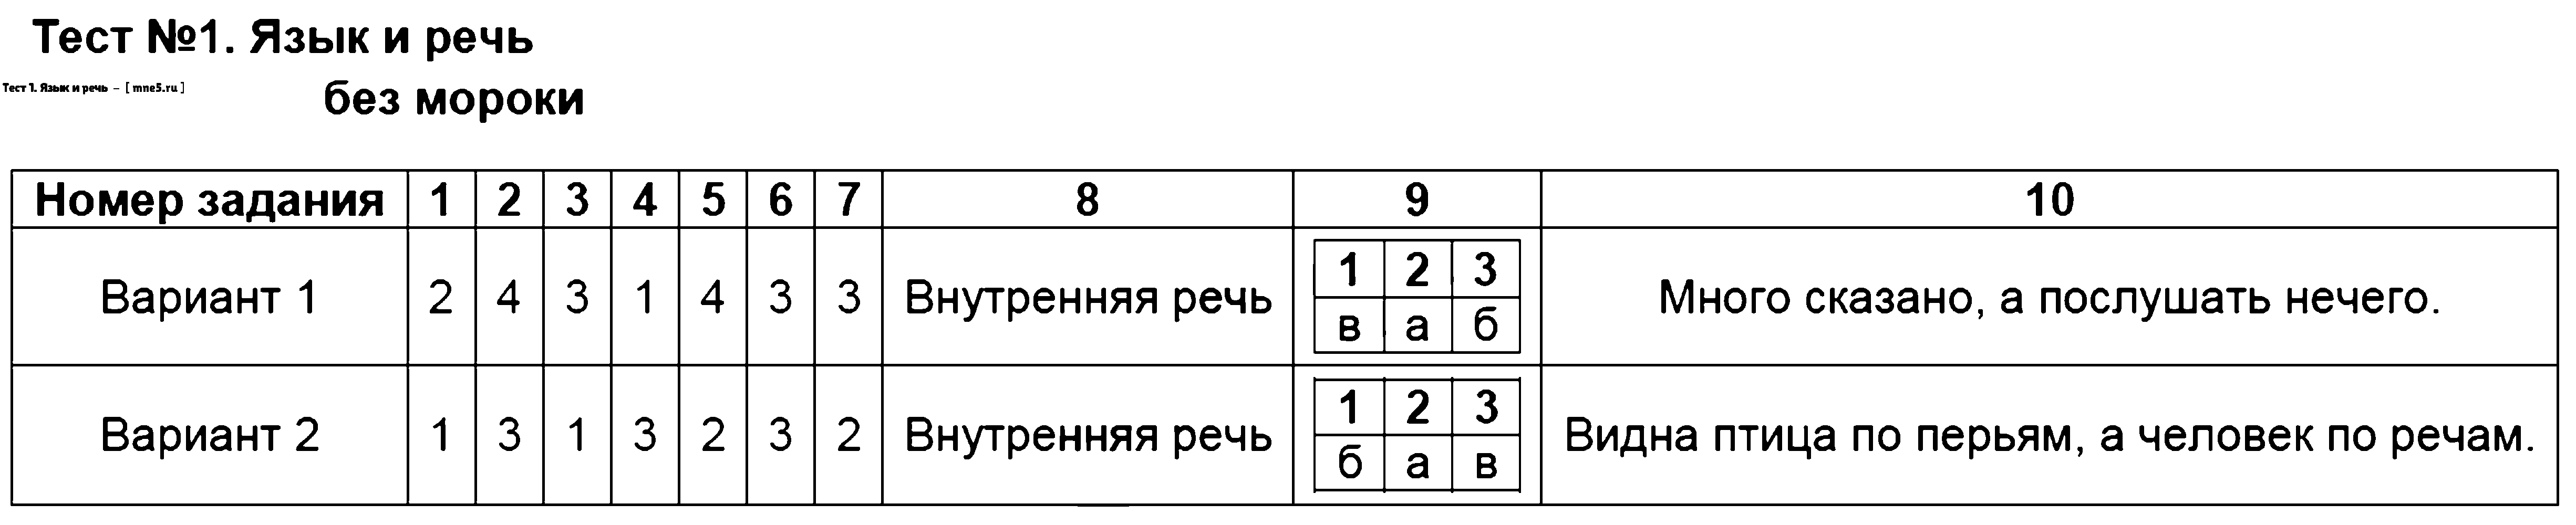 ГДЗ Русский язык 3 класс - Тест 1. Язык и речь